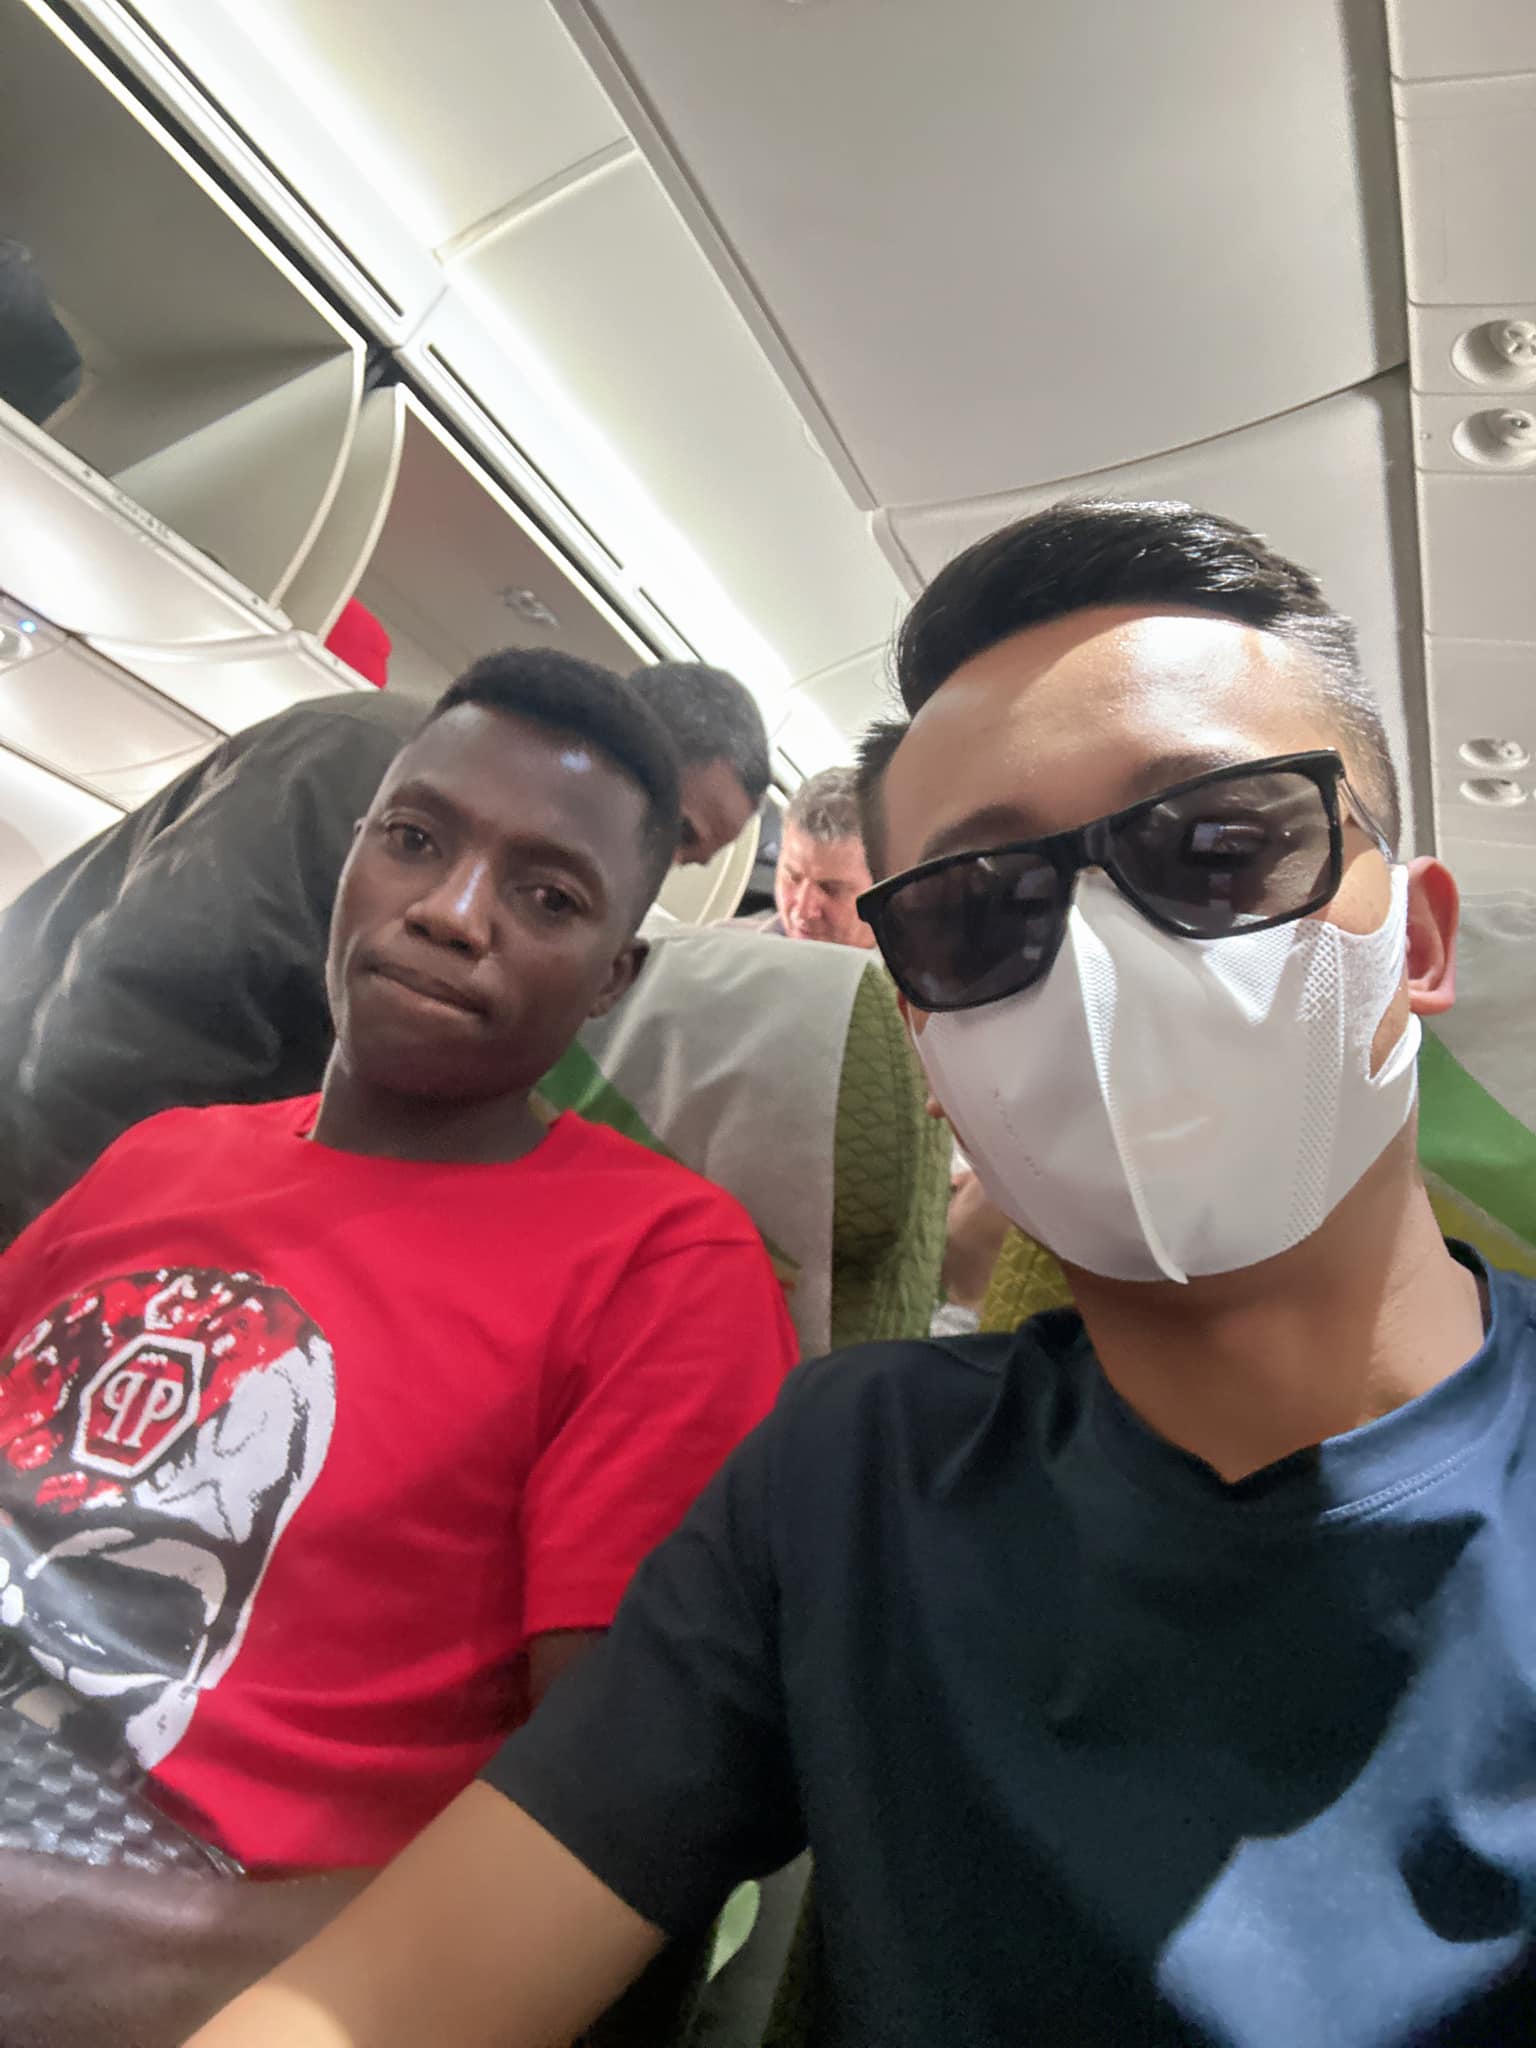 Quang Linh Vlogs gặp sự cố trên đường bay về Việt Nam, buồn vì lỡ hẹn đặc biệt - Ảnh 1.